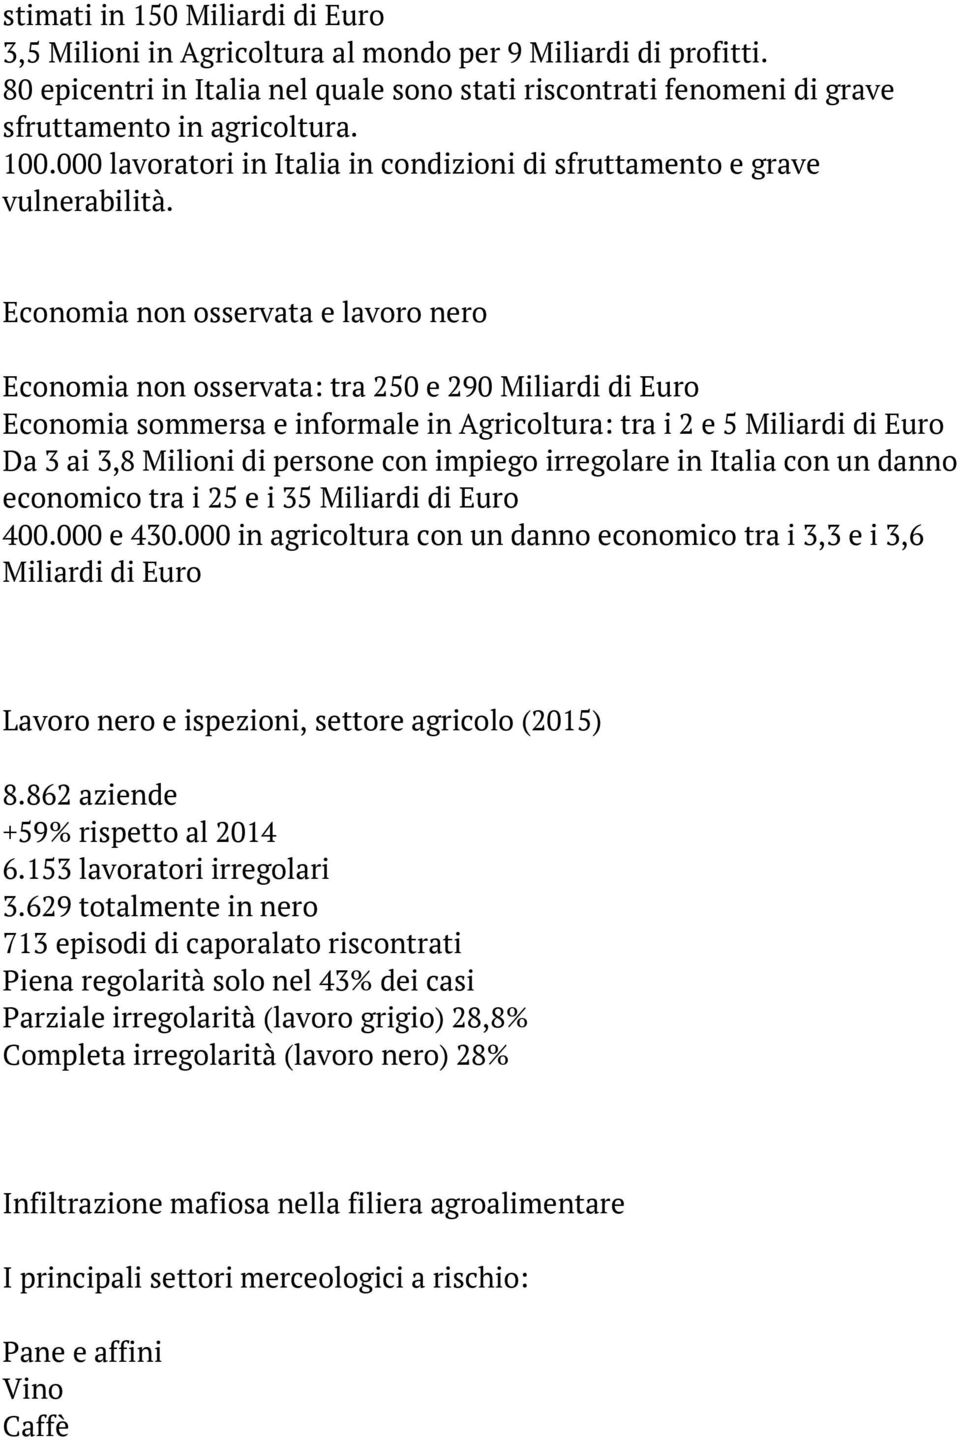 Economia non osservata e lavoro nero Economia non osservata: tra 250 e 290 Miliardi di Euro Economia sommersa e informale in Agricoltura: tra i 2 e 5 Miliardi di Euro Da 3 ai 3,8 Milioni di persone